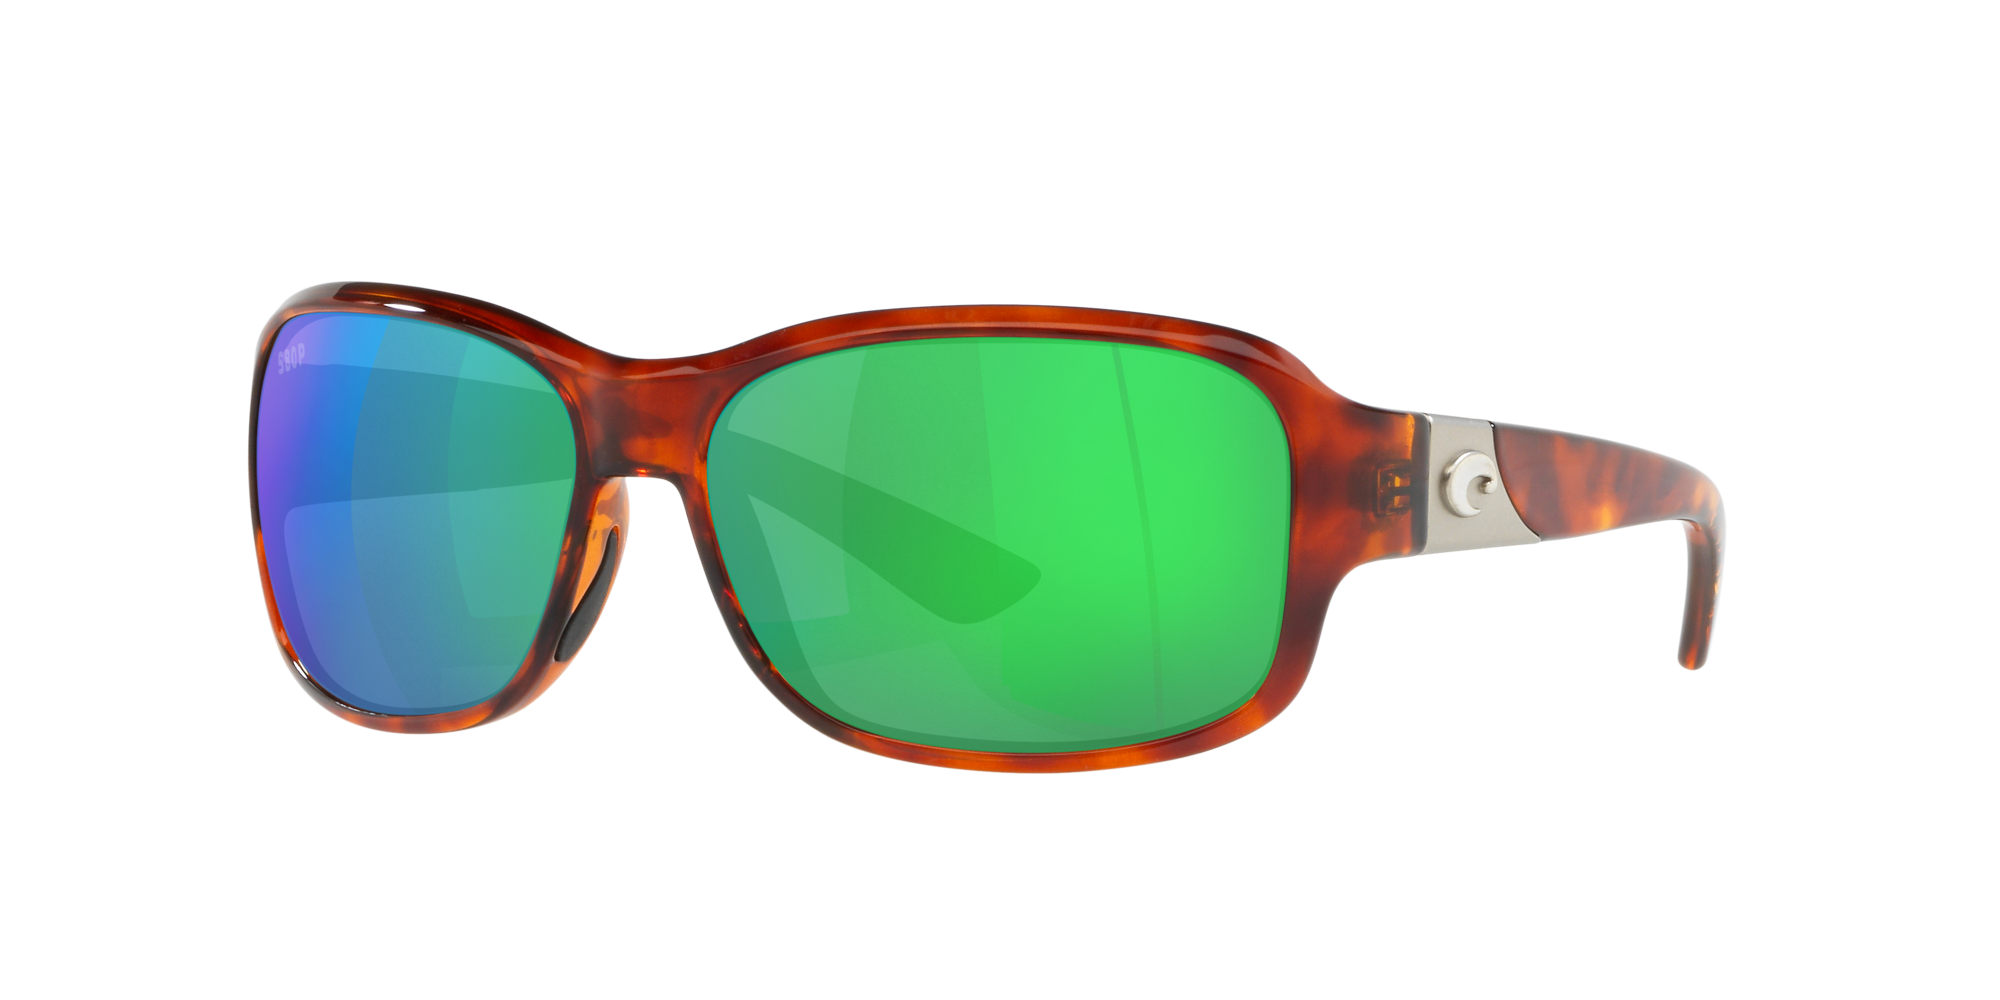 Costa del Mar Double Haul Polarized Sunglasses Tortoise/Blue Mirror 580G Glass 